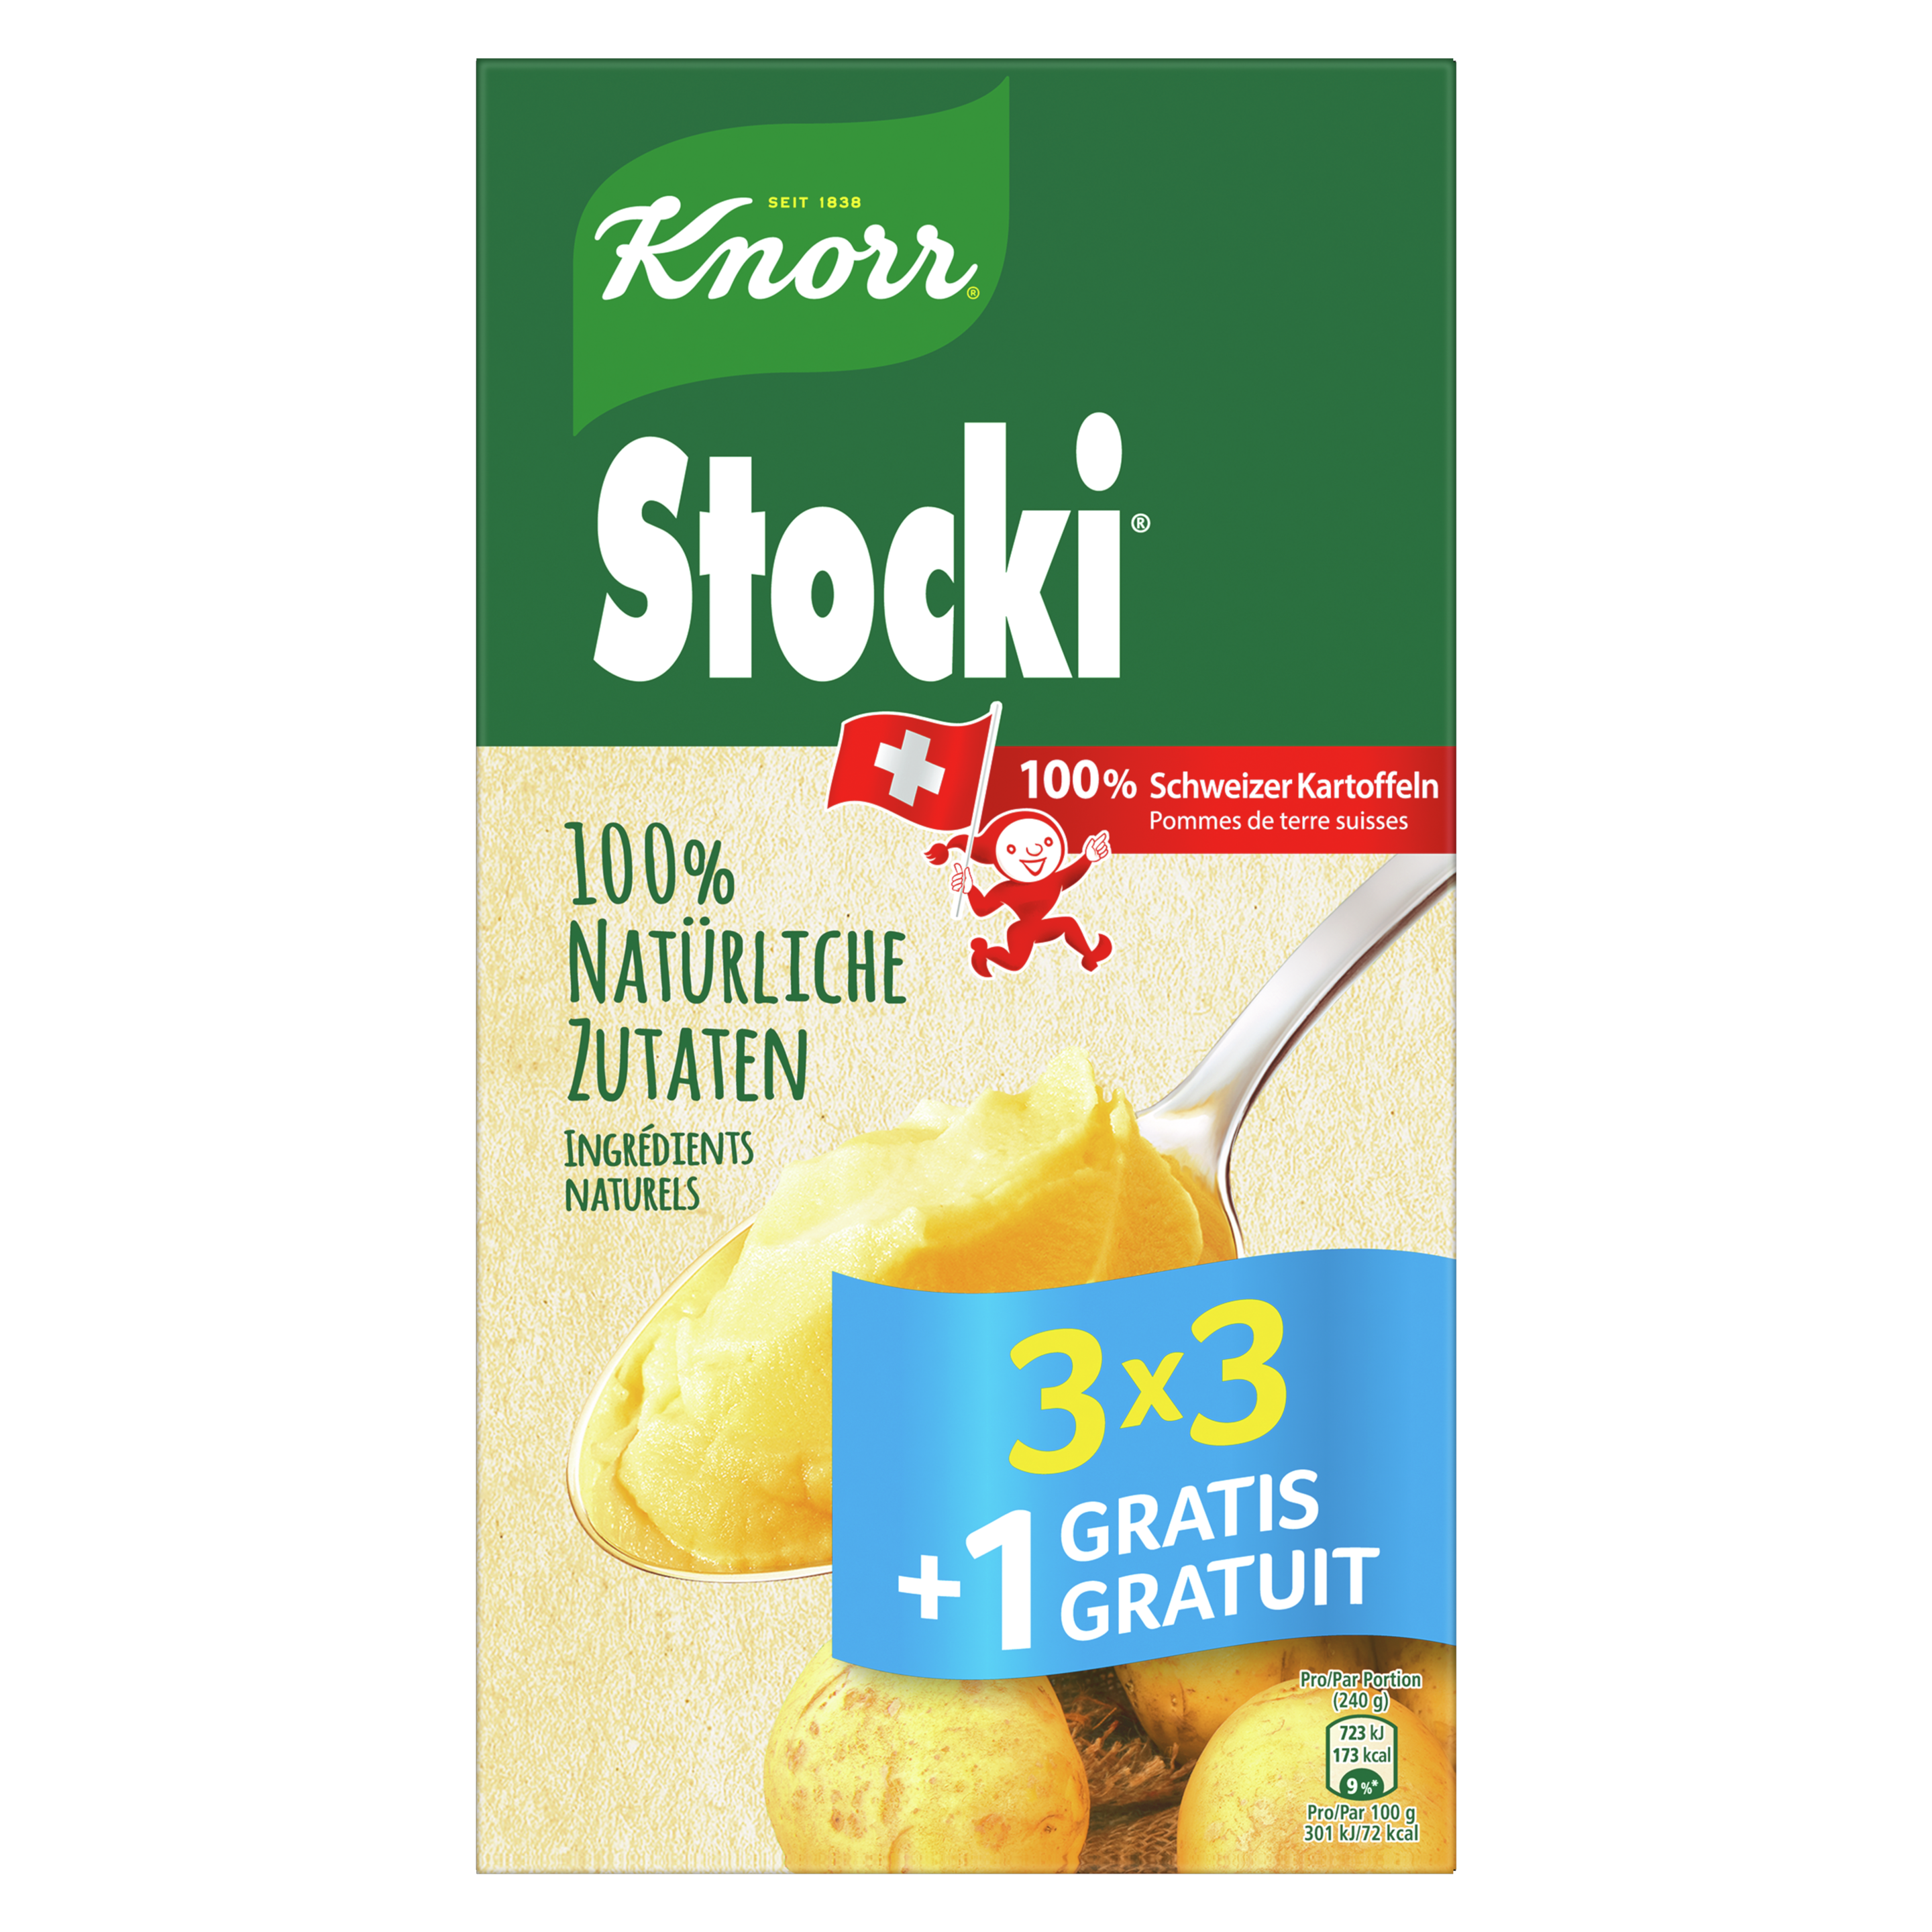 KNORR ingrédients 100% naturels Stocki purée de pommes de terre 3 x 3 +1 portions